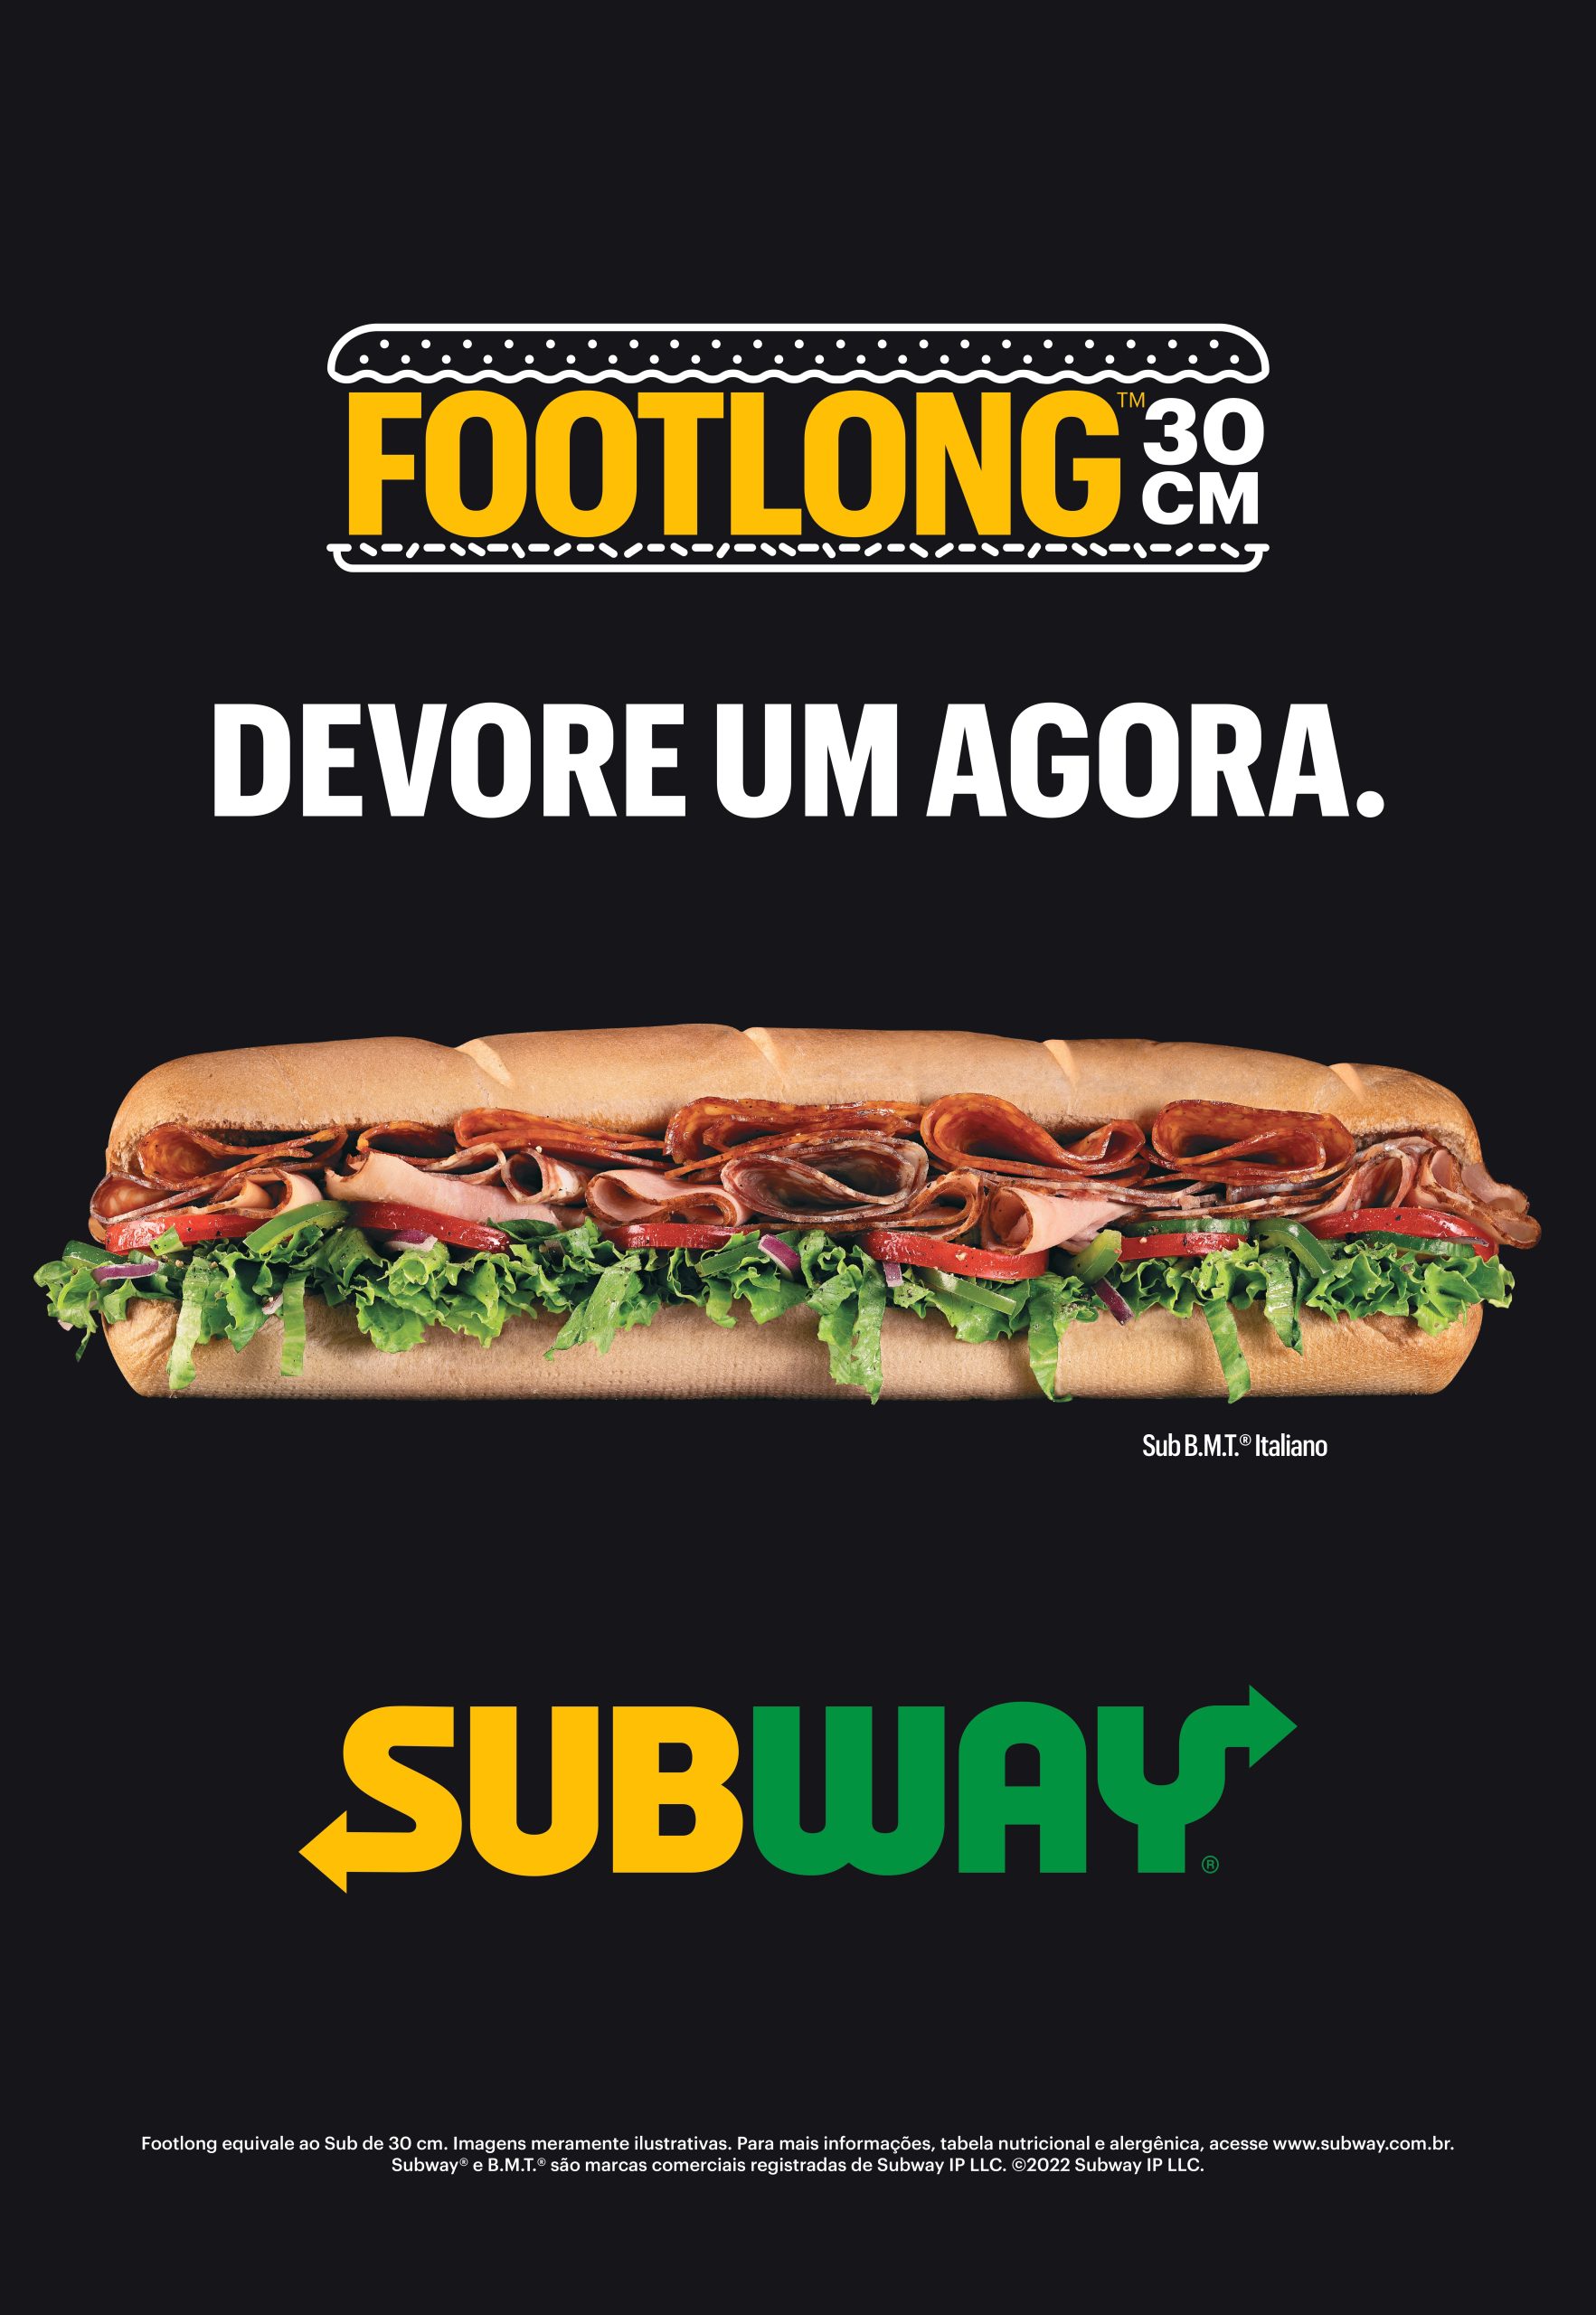 Subway Brasil - Será que tem como deixar seu Sub AINDA